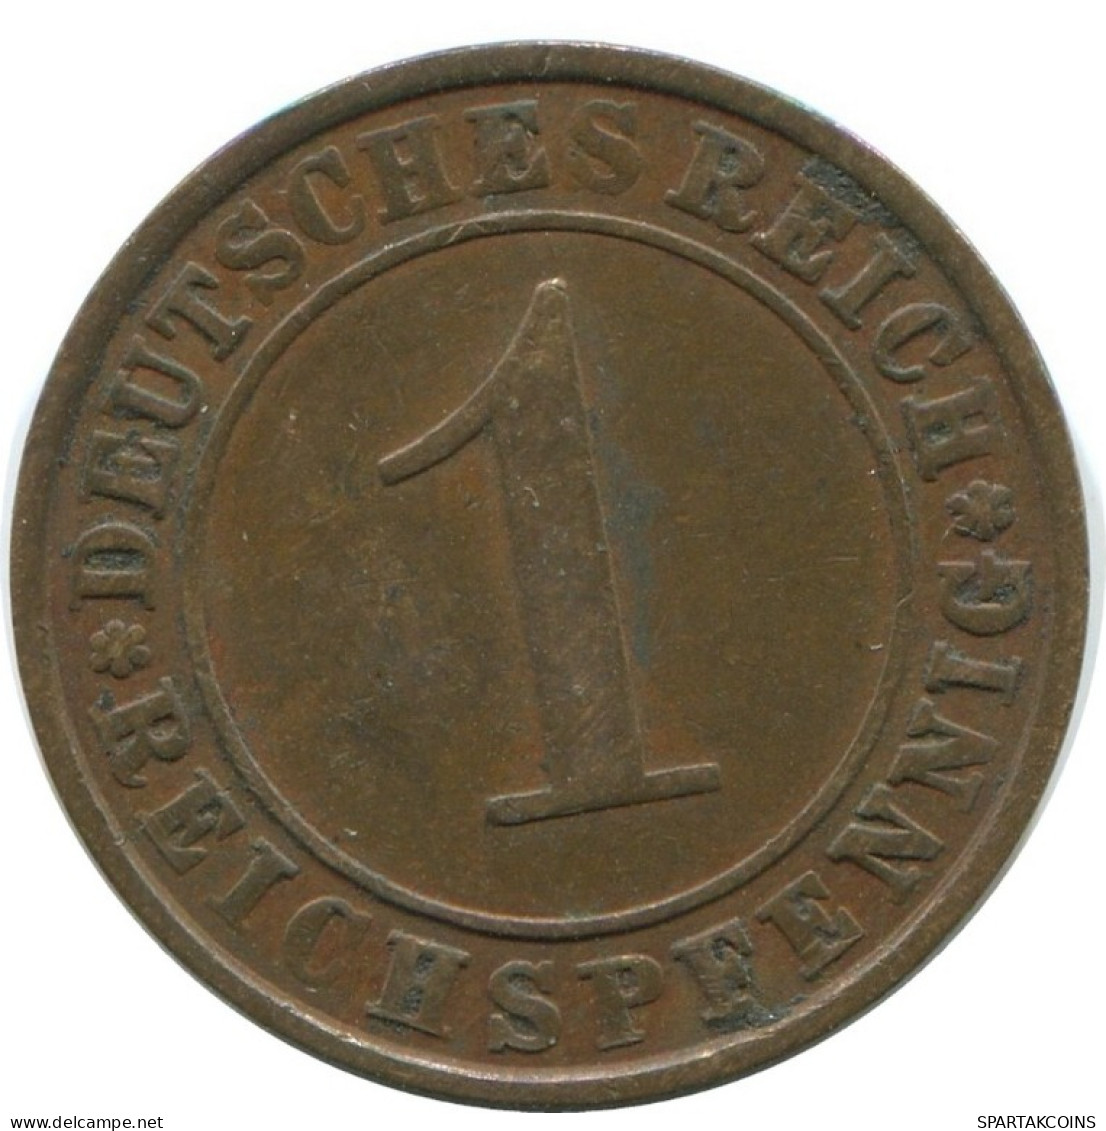 1 REICHSPFENNIG 1930 A DEUTSCHLAND Münze GERMANY #AD458.9.D.A - 1 Rentenpfennig & 1 Reichspfennig